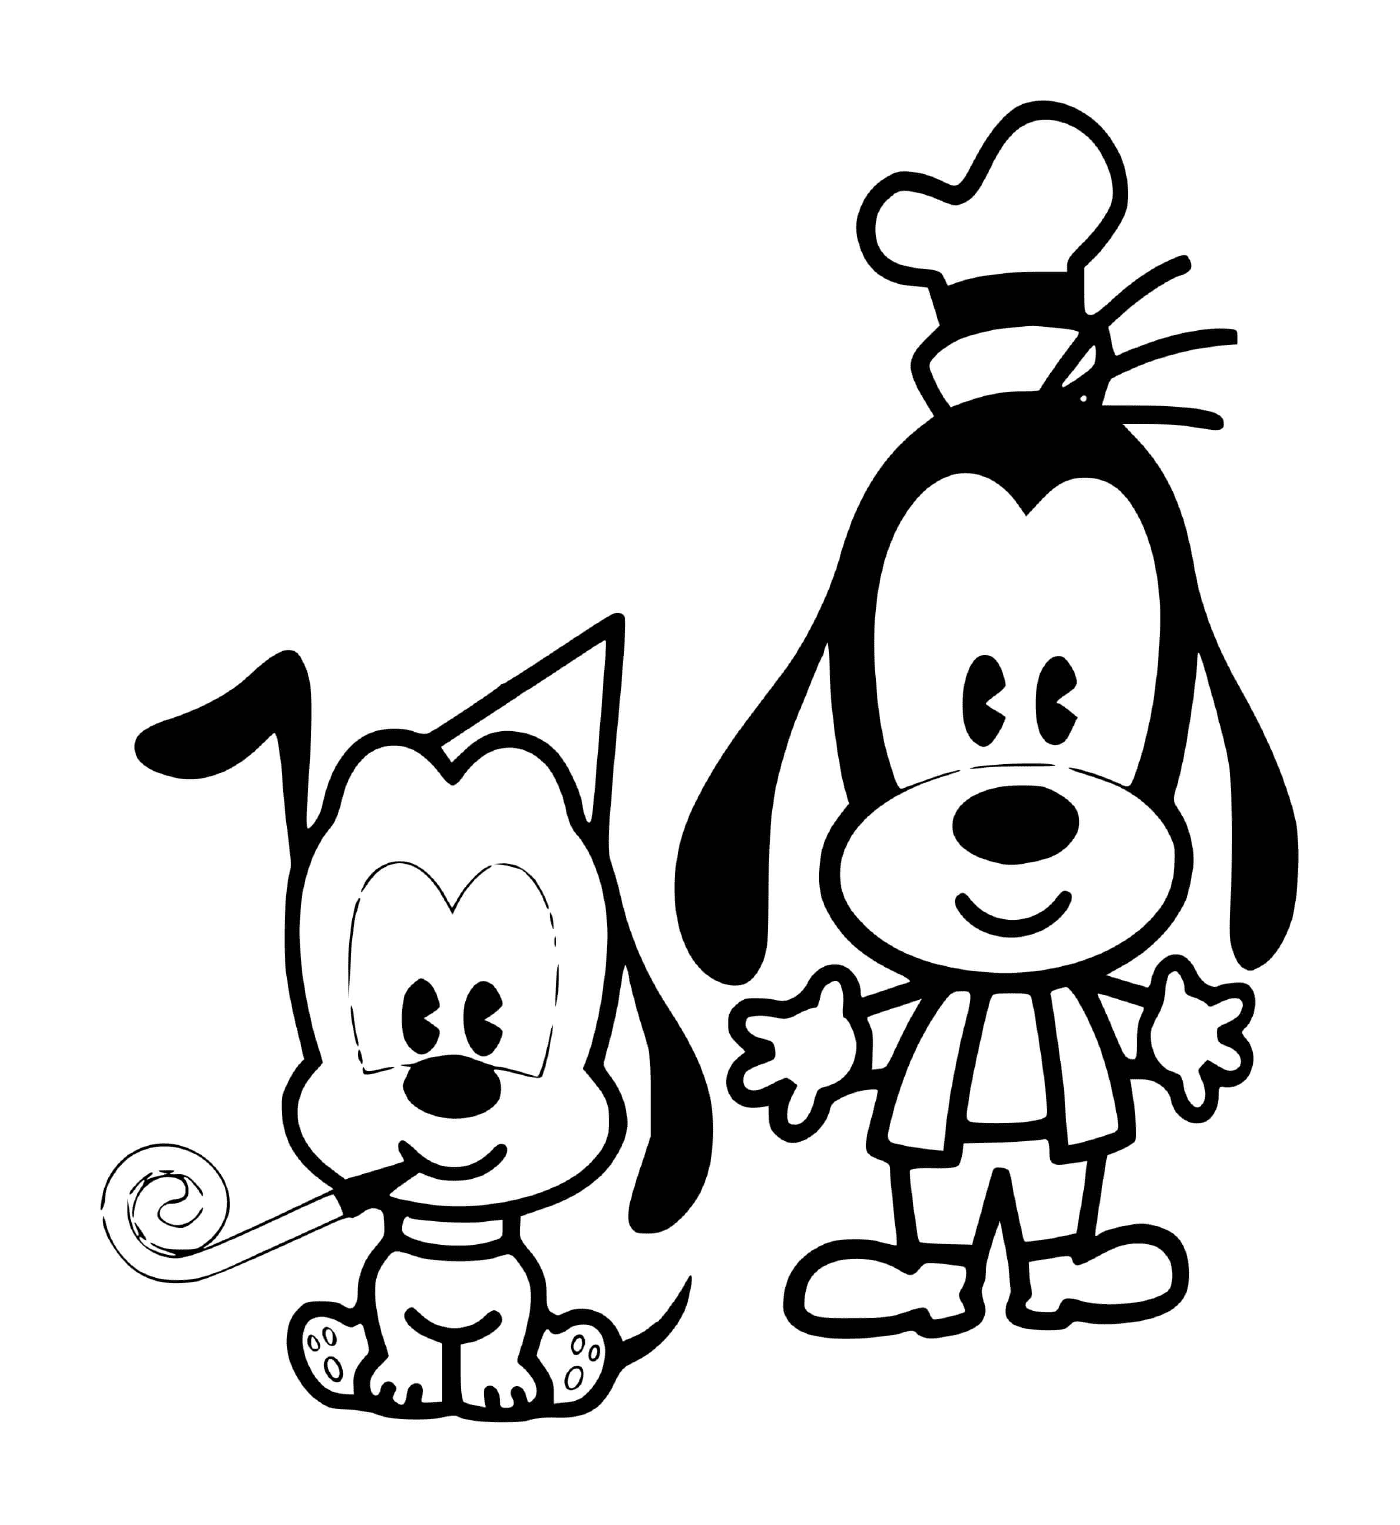  Dingo e Pluto bebê para um aniversário 